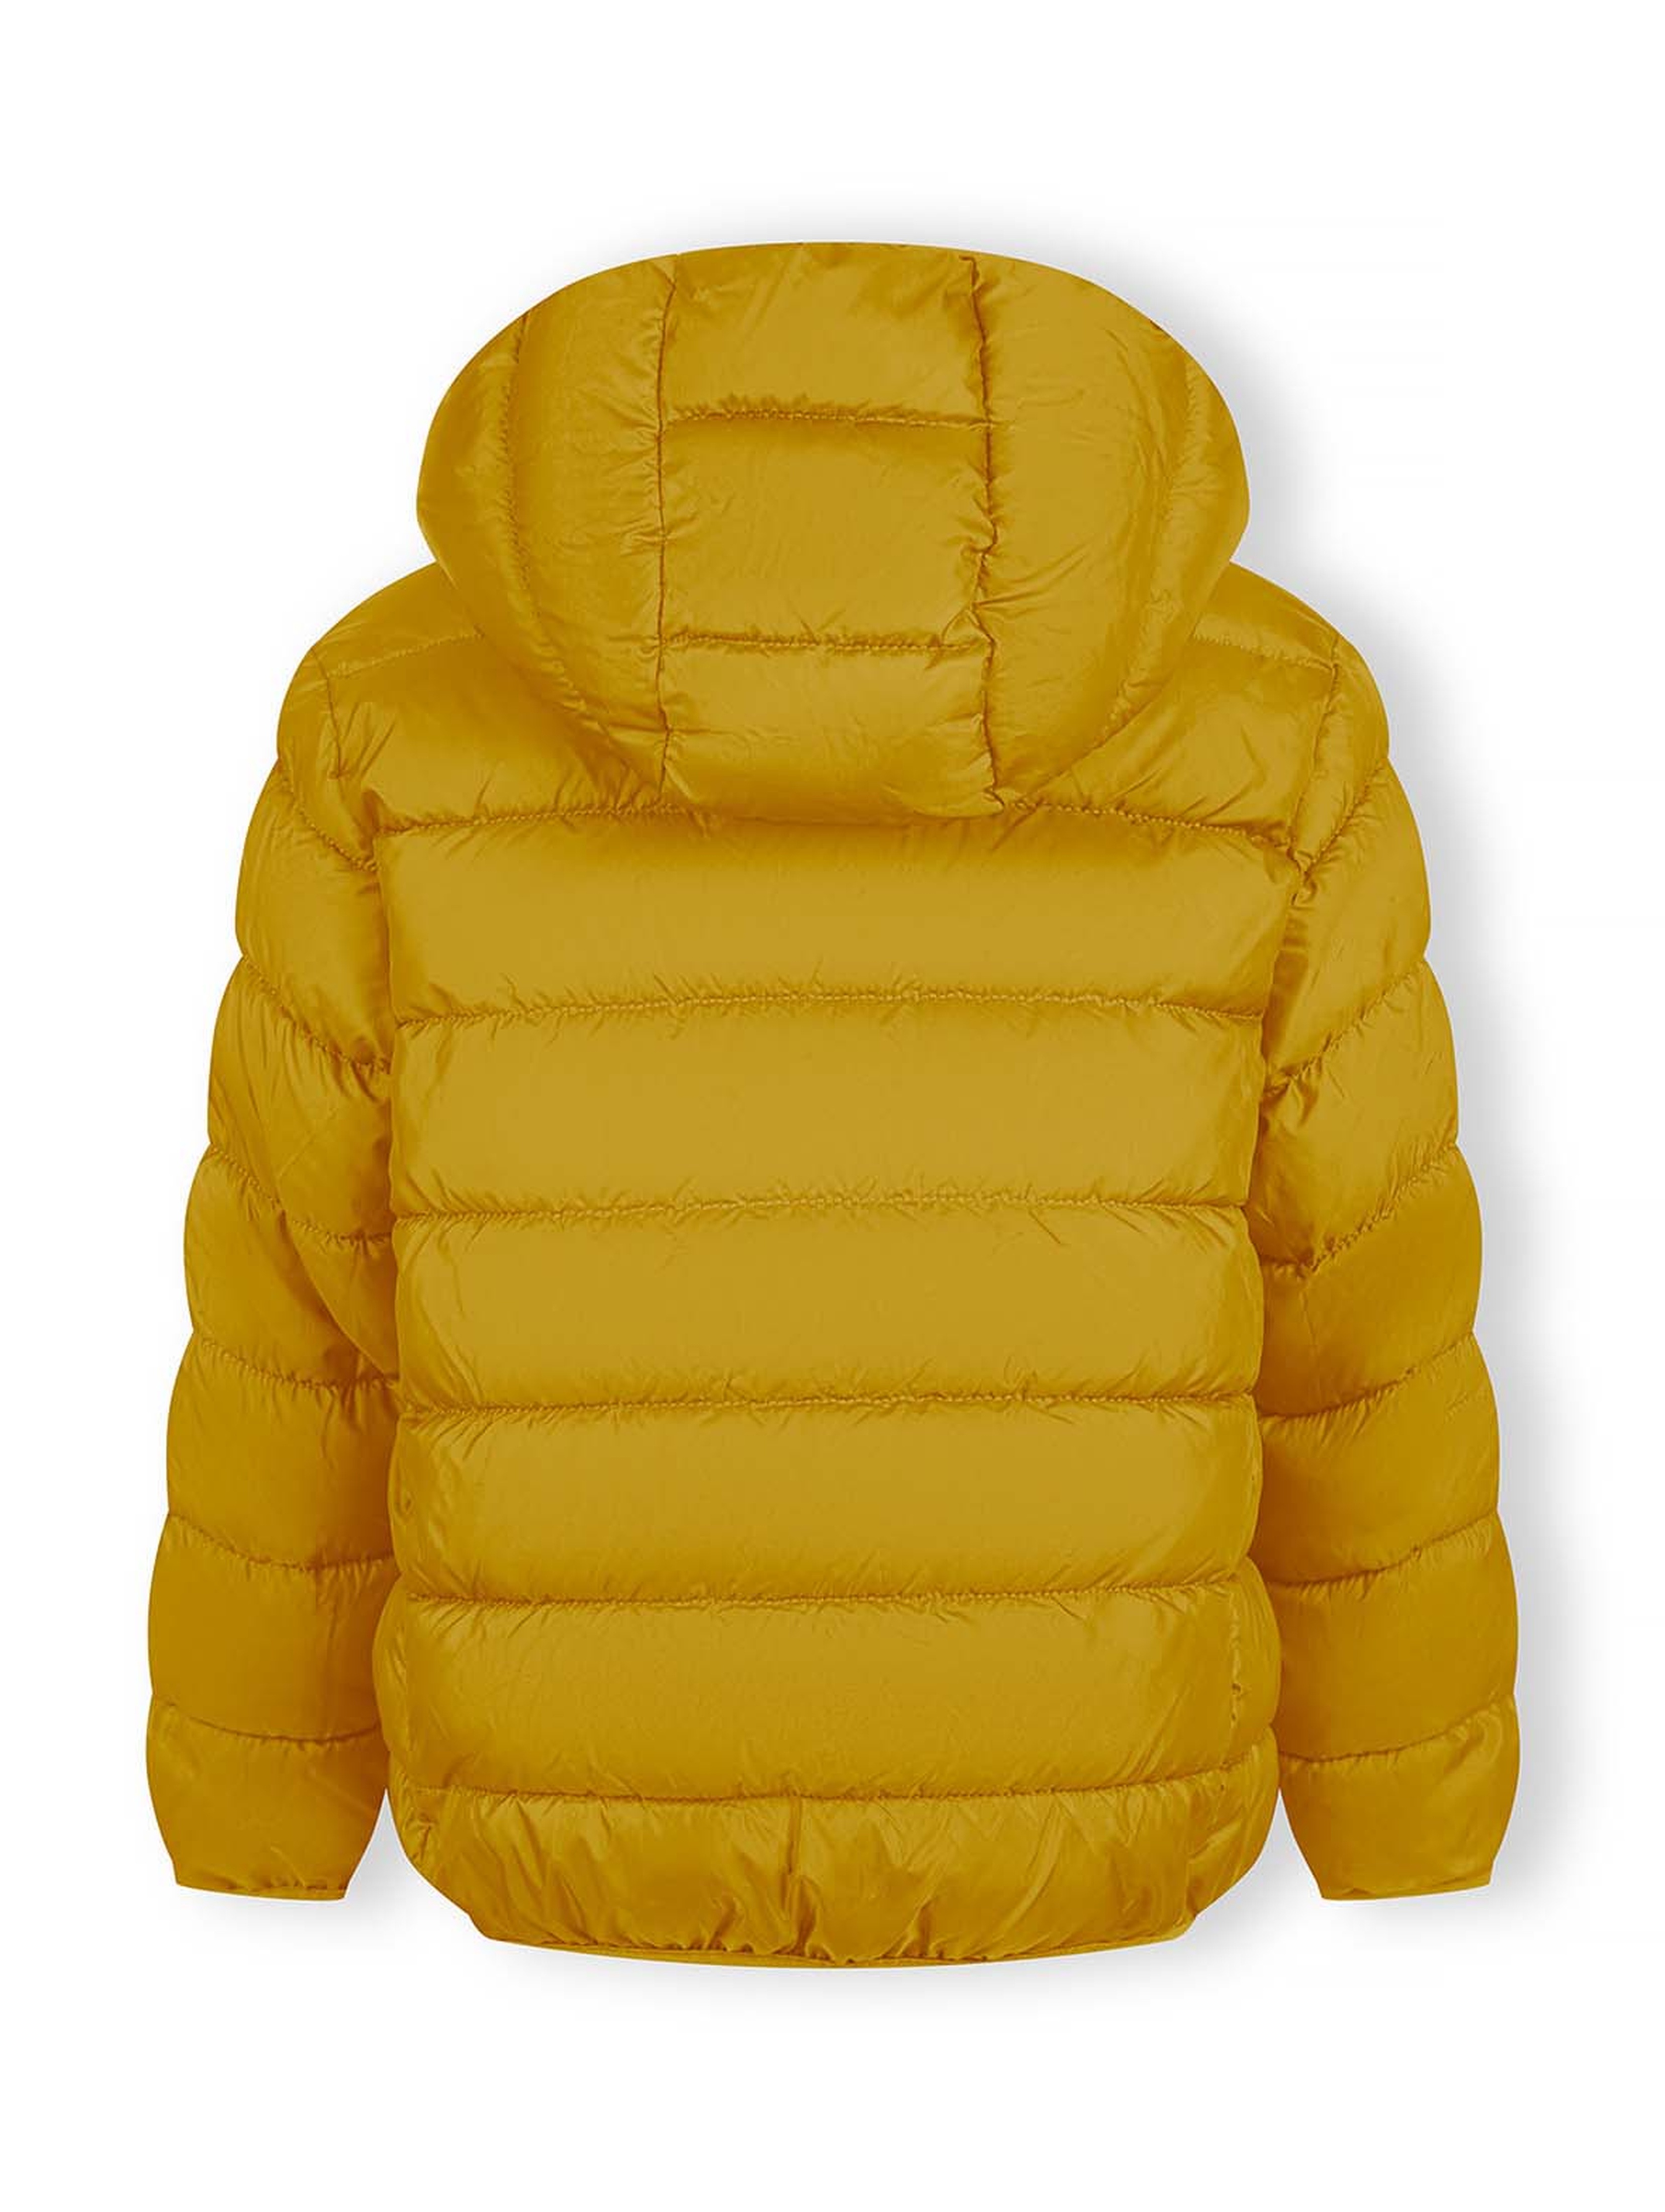 Lekka ocieplana kurtka przejściowa dla chłopca z kapturem- żółta